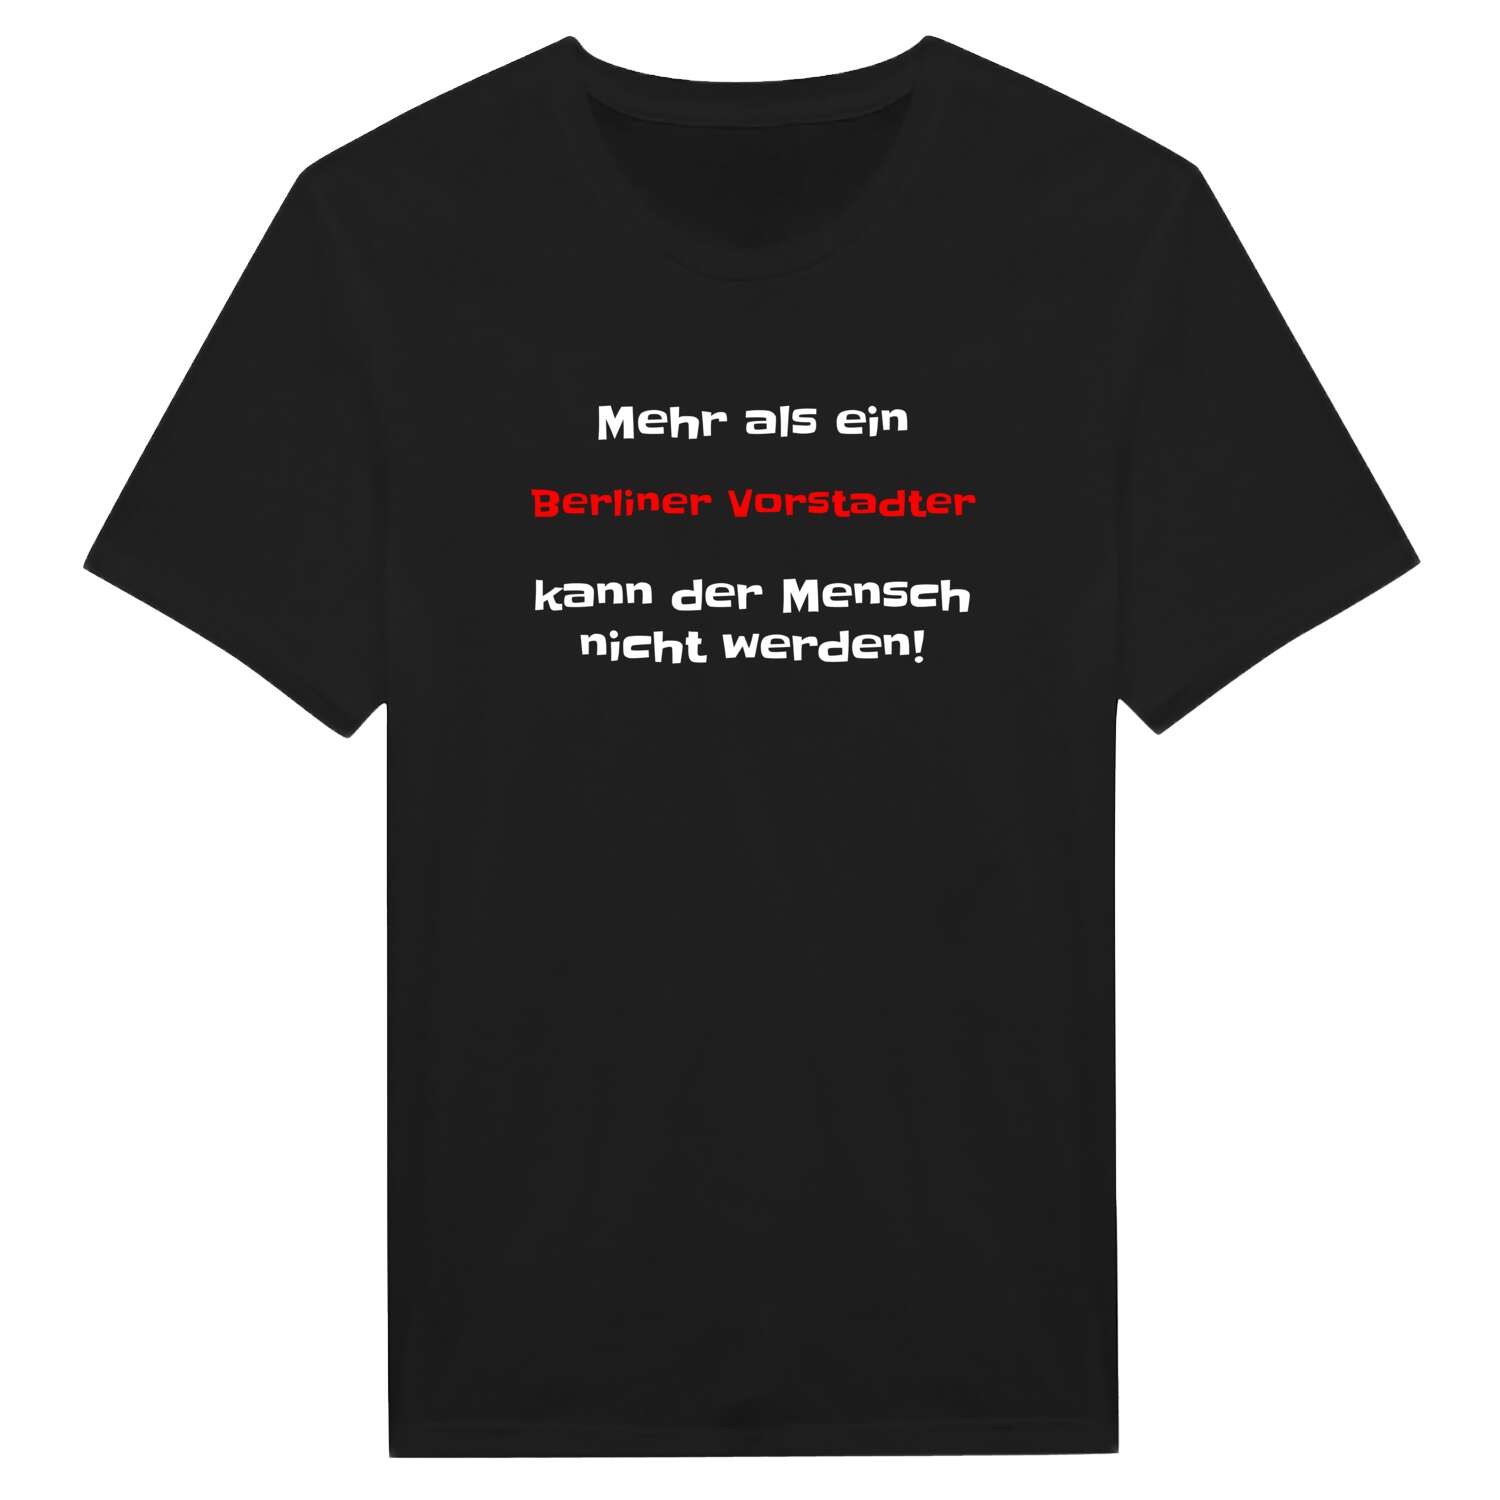 Berliner Vorstadt T-Shirt »Mehr als ein«